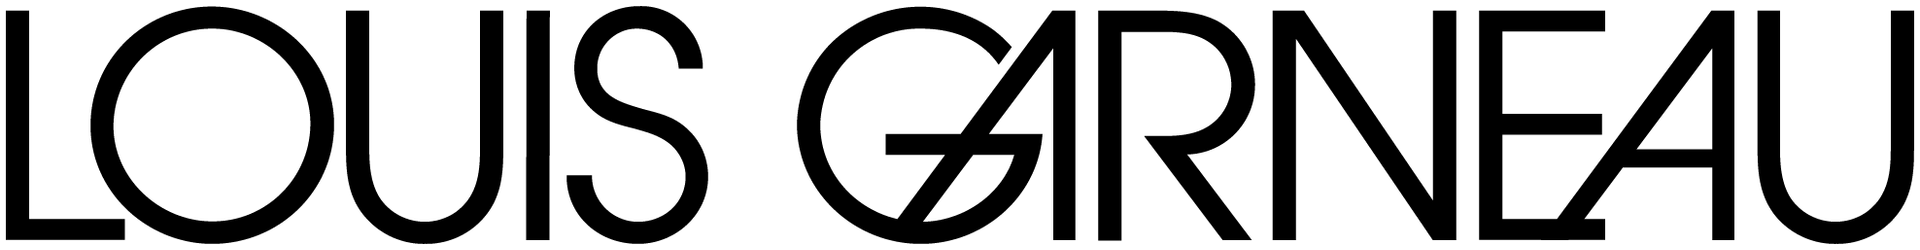 LOUIS GARNEAU logo de circulaires